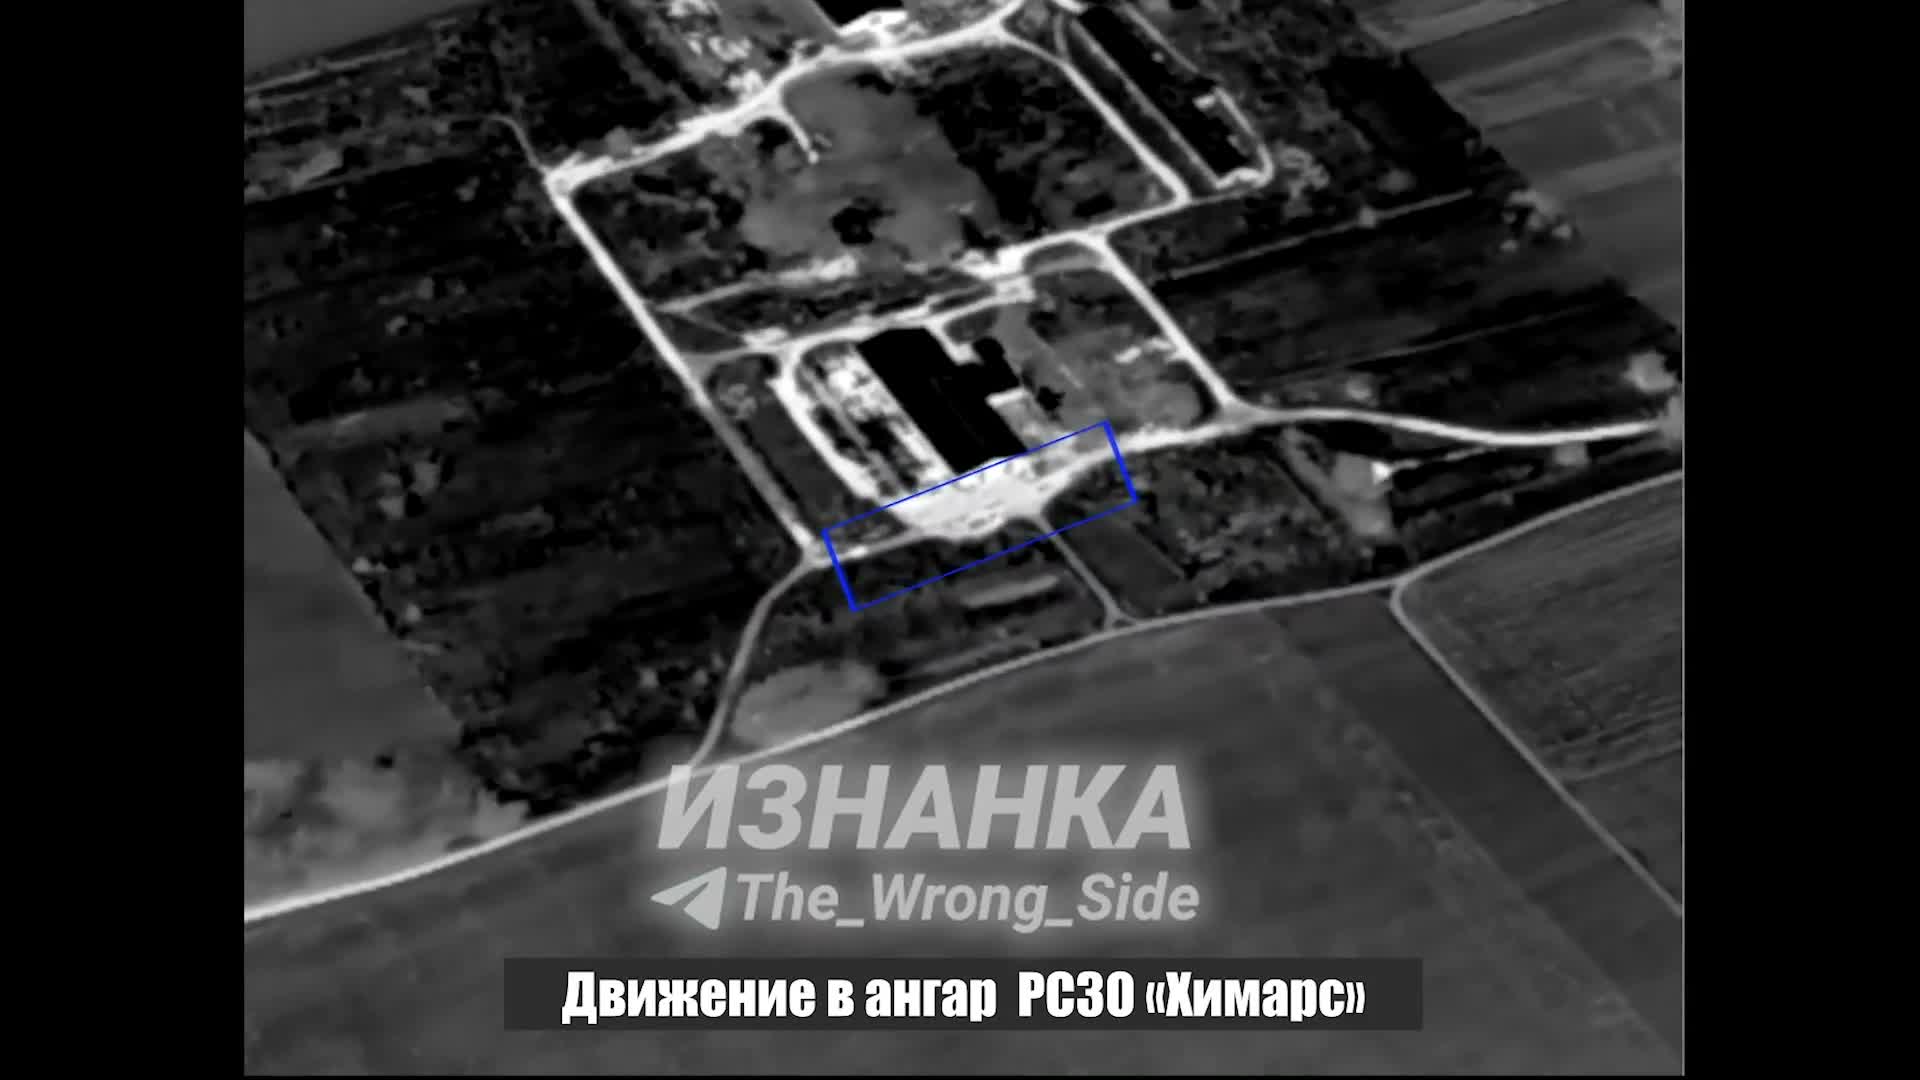 Thế giới - Khoảnh khắc tên lửa chiến thuật Iskander-M Nga tấn công, phá huỷ hệ thống HIMARS đắt đỏ của Ukraine